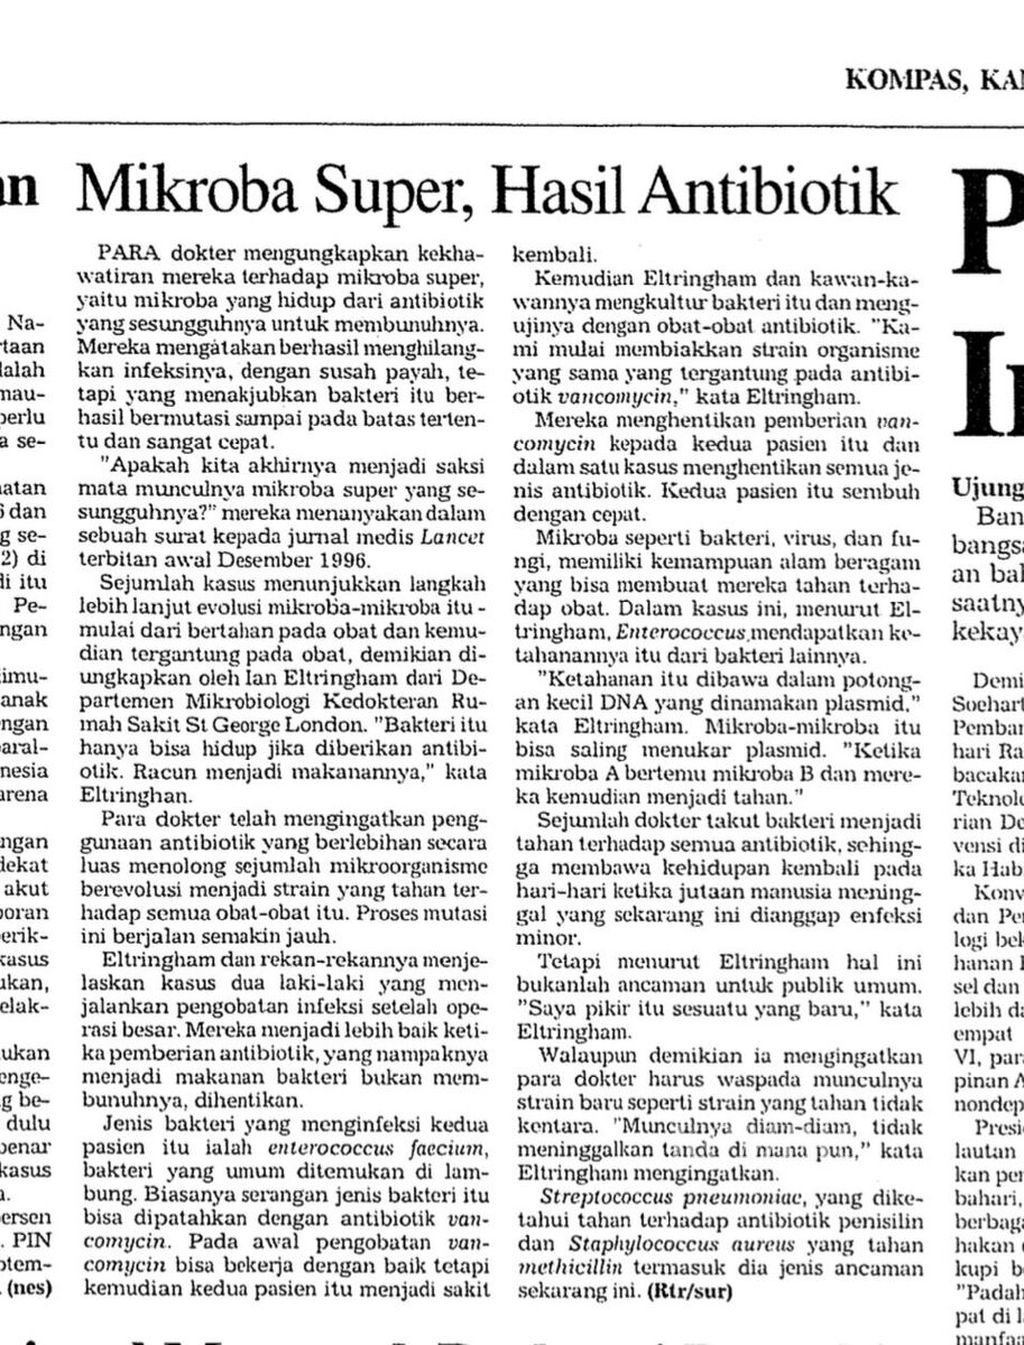 Arsip berita lama di harian <i>Kompas</i> yang terbit pada Kamis, 19 Desember 1996, tentang kekhawatiran kalangan dokter di London, Inggris, tentang munculnya mikroba super atau bakteri yang kebal antibiotik. 